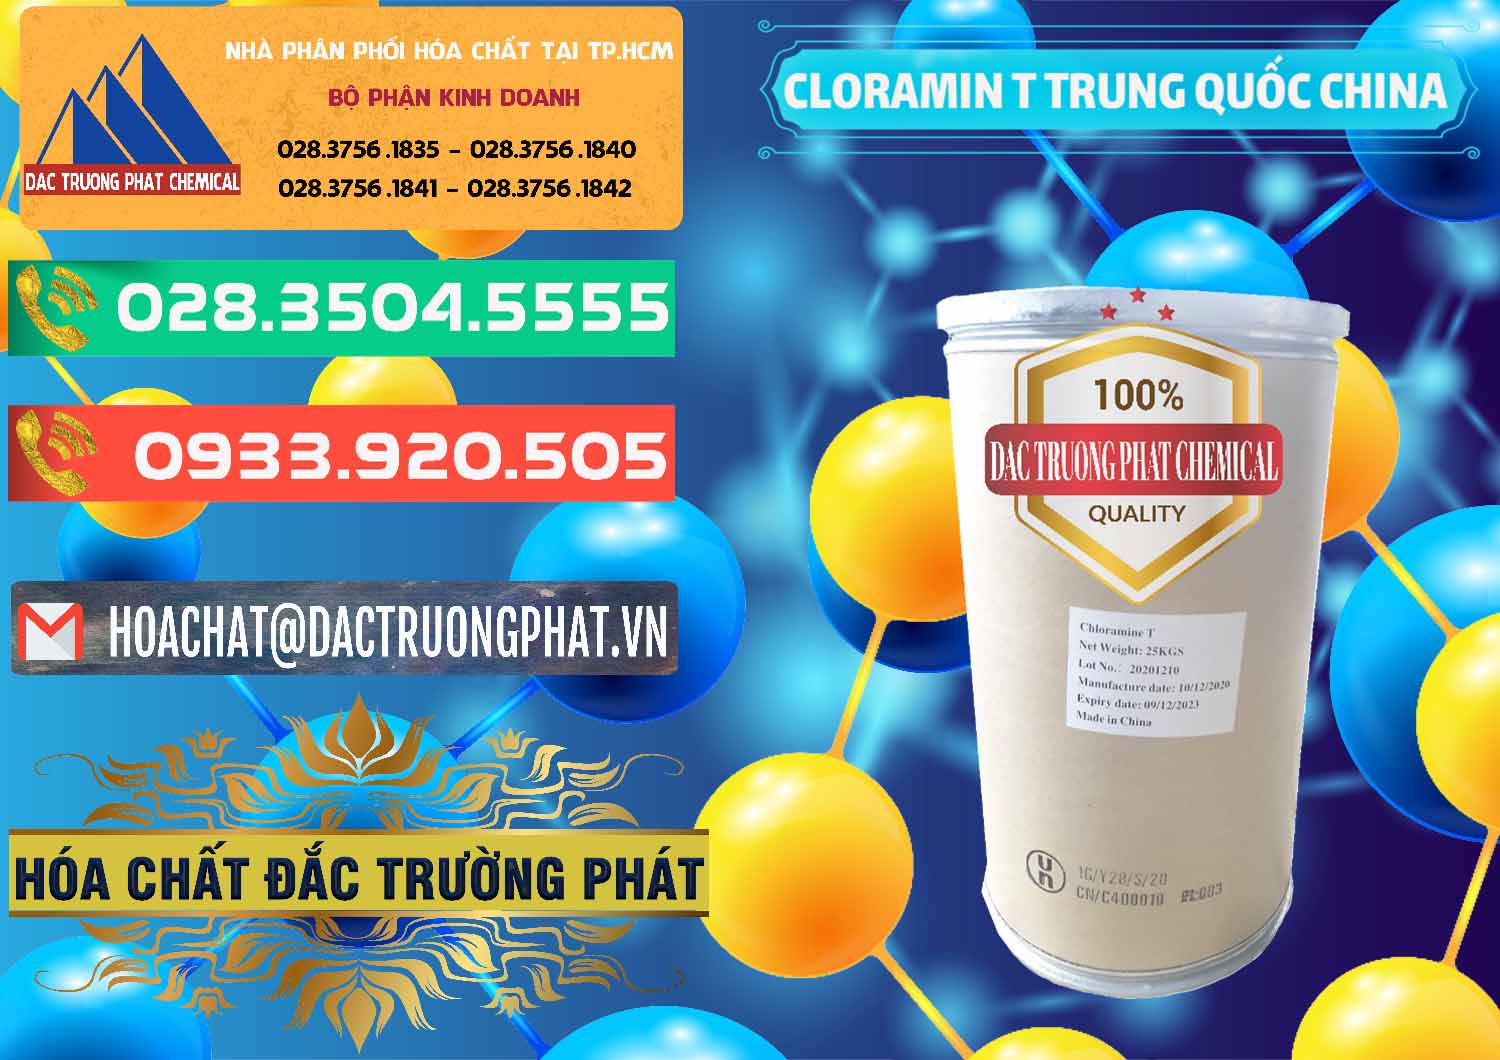 Cty chuyên bán ( cung cấp ) Cloramin T Khử Trùng, Diệt Khuẩn Trung Quốc China - 0301 - Nơi bán ( cung cấp ) hóa chất tại TP.HCM - congtyhoachat.com.vn